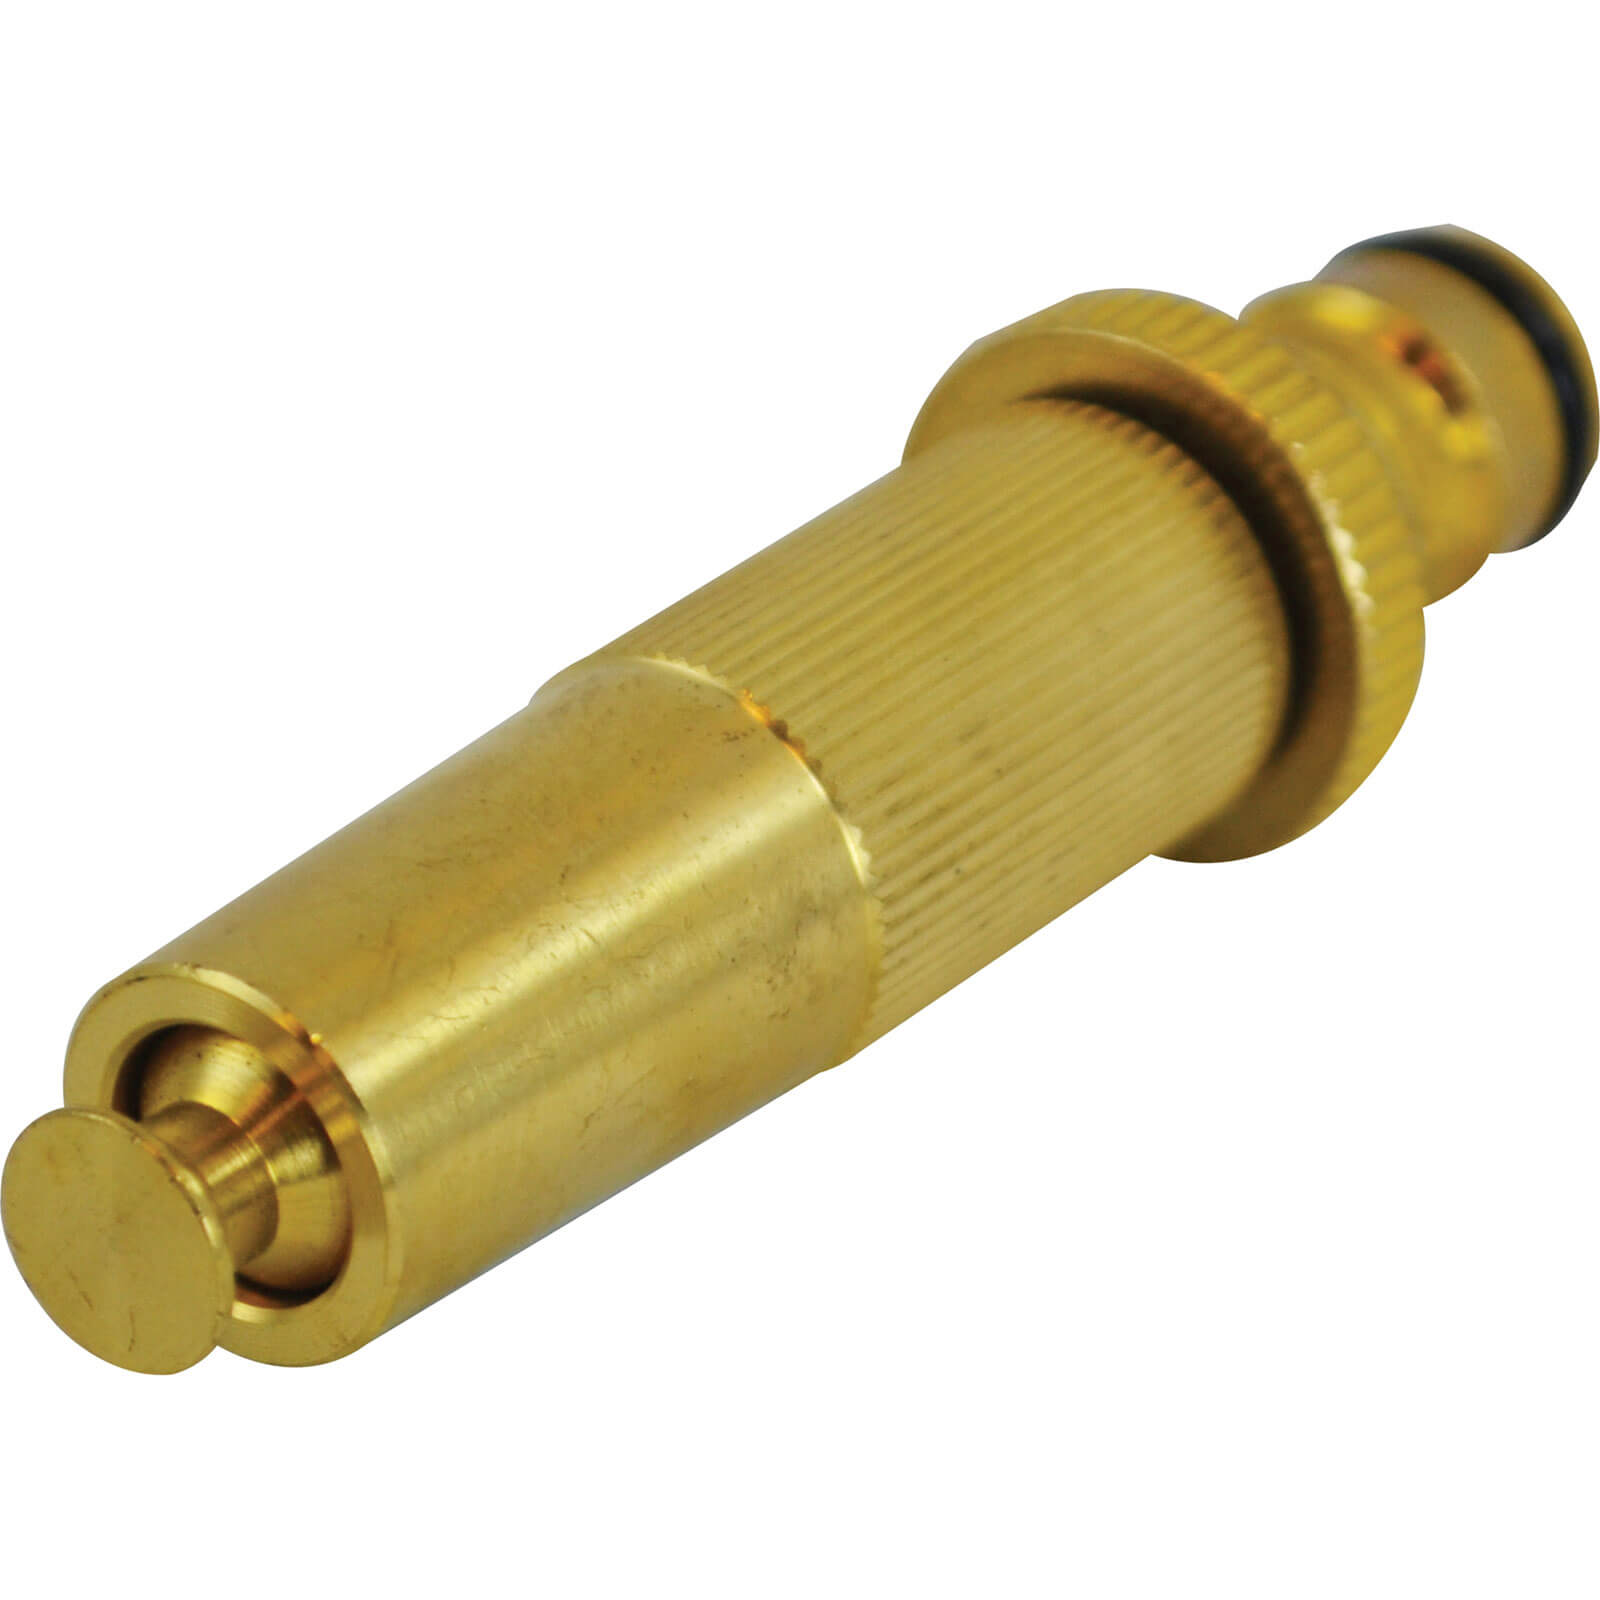 Image of Faithfull Brass Garden Adjustable Spray Nozzle